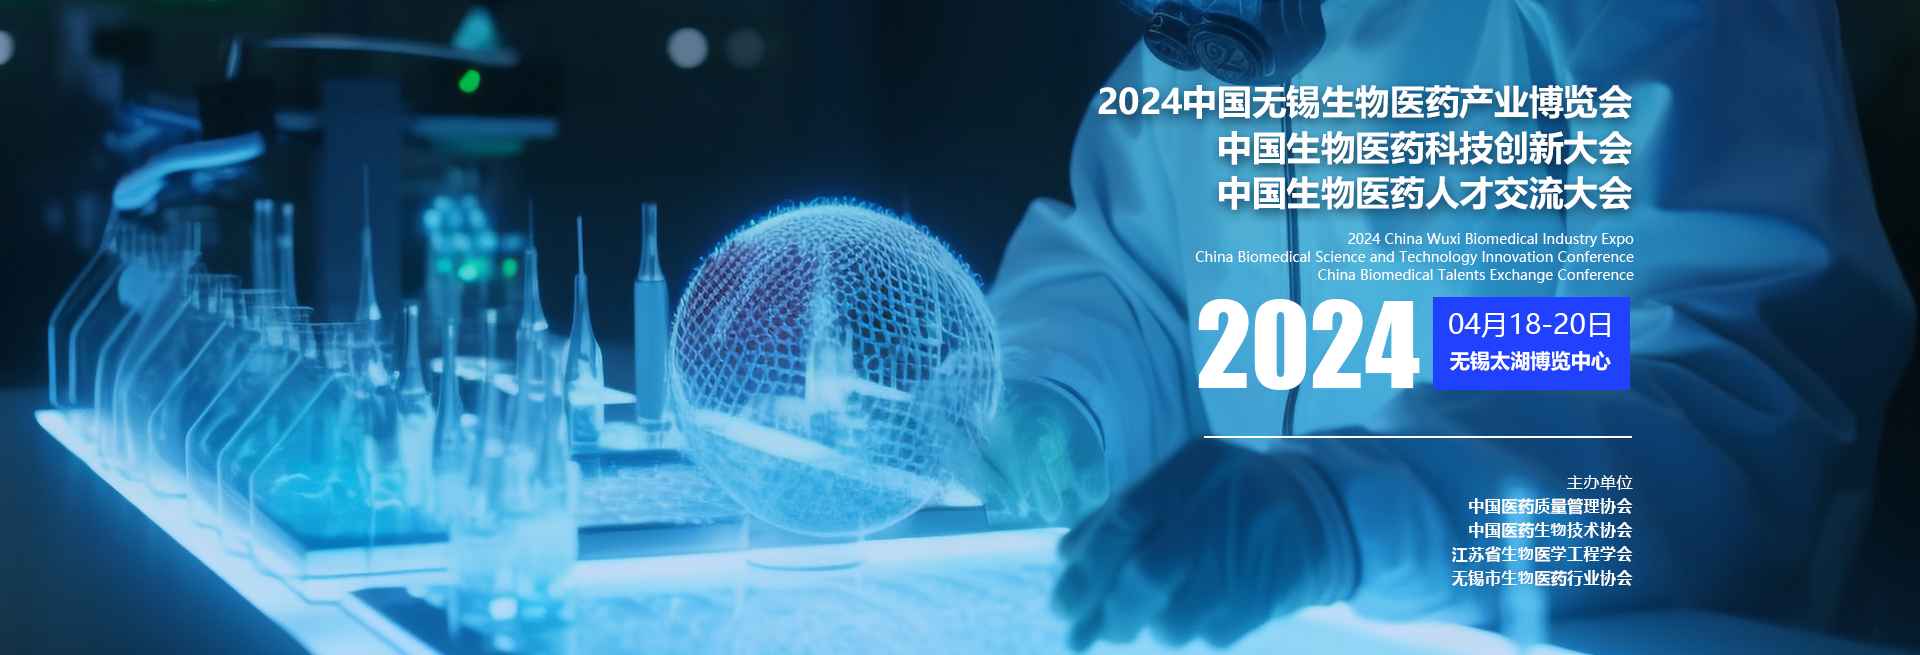 2024中国无锡生物医药产业博览会、中国生物医药科技创新质量大会、中国生物医药人才交流大会